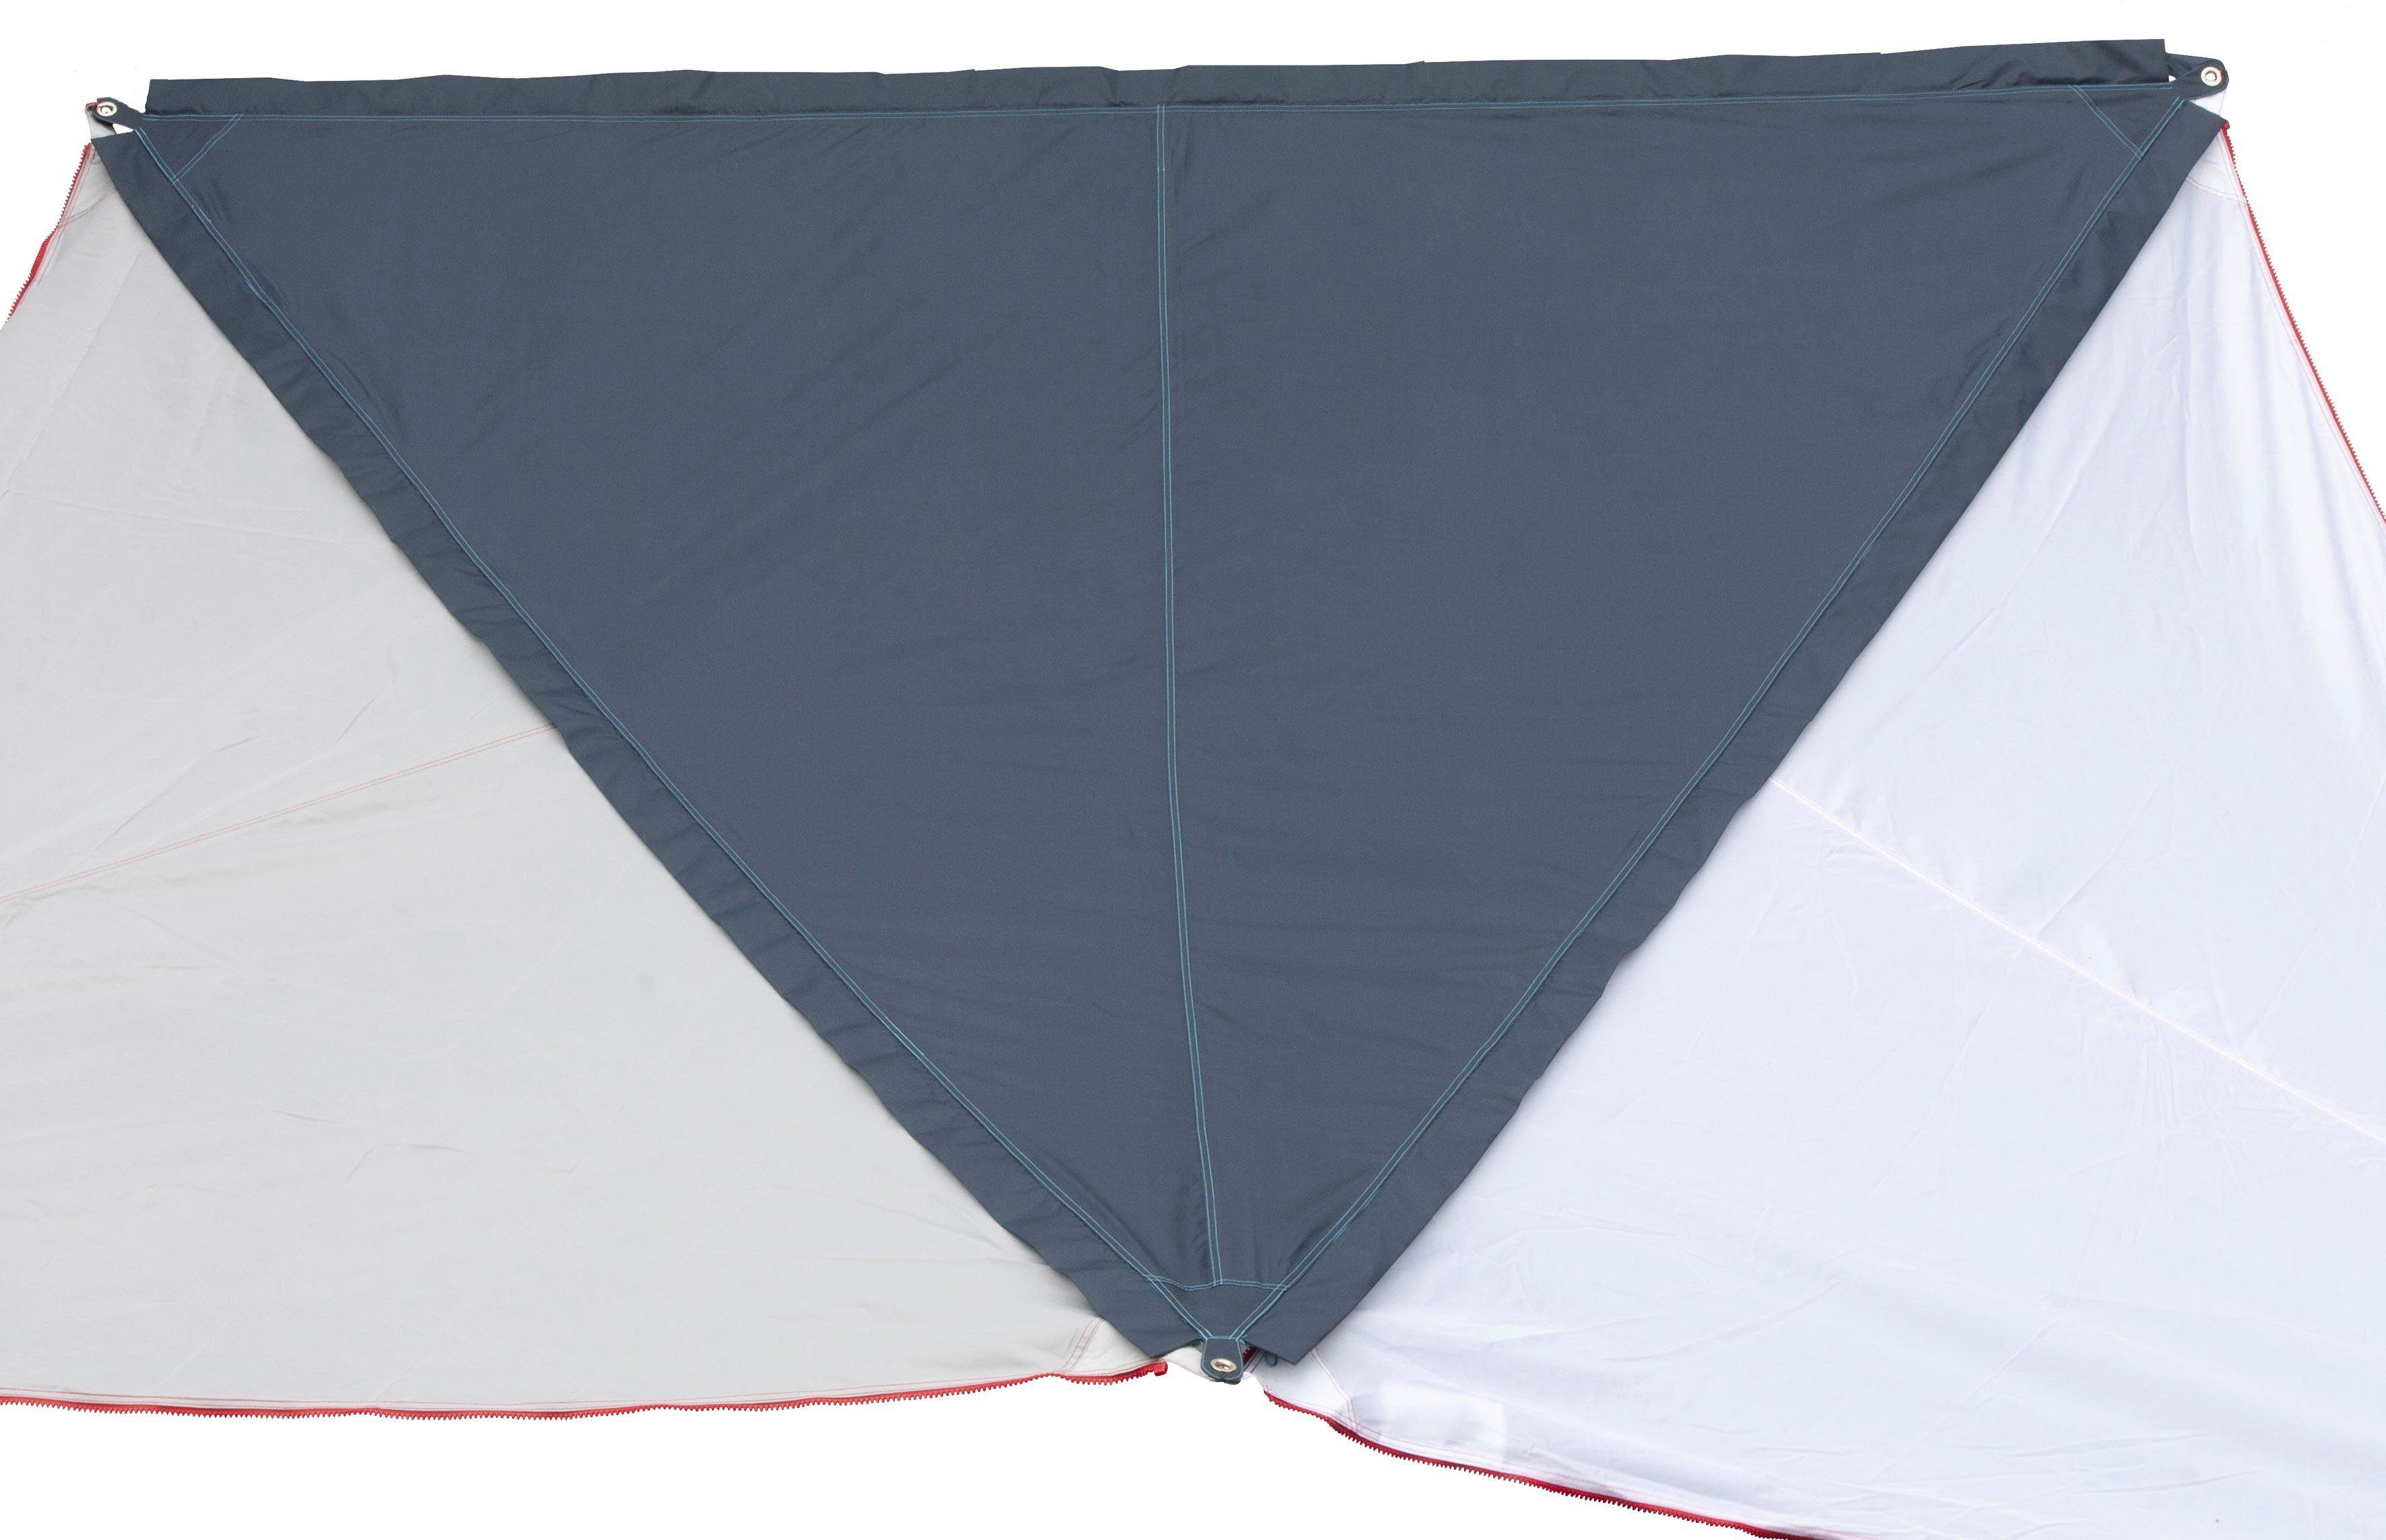 / RV Zip-Protect dunkelblau mit Canvas hellblau BENT Sonnensegel RV-Abdeckung Single